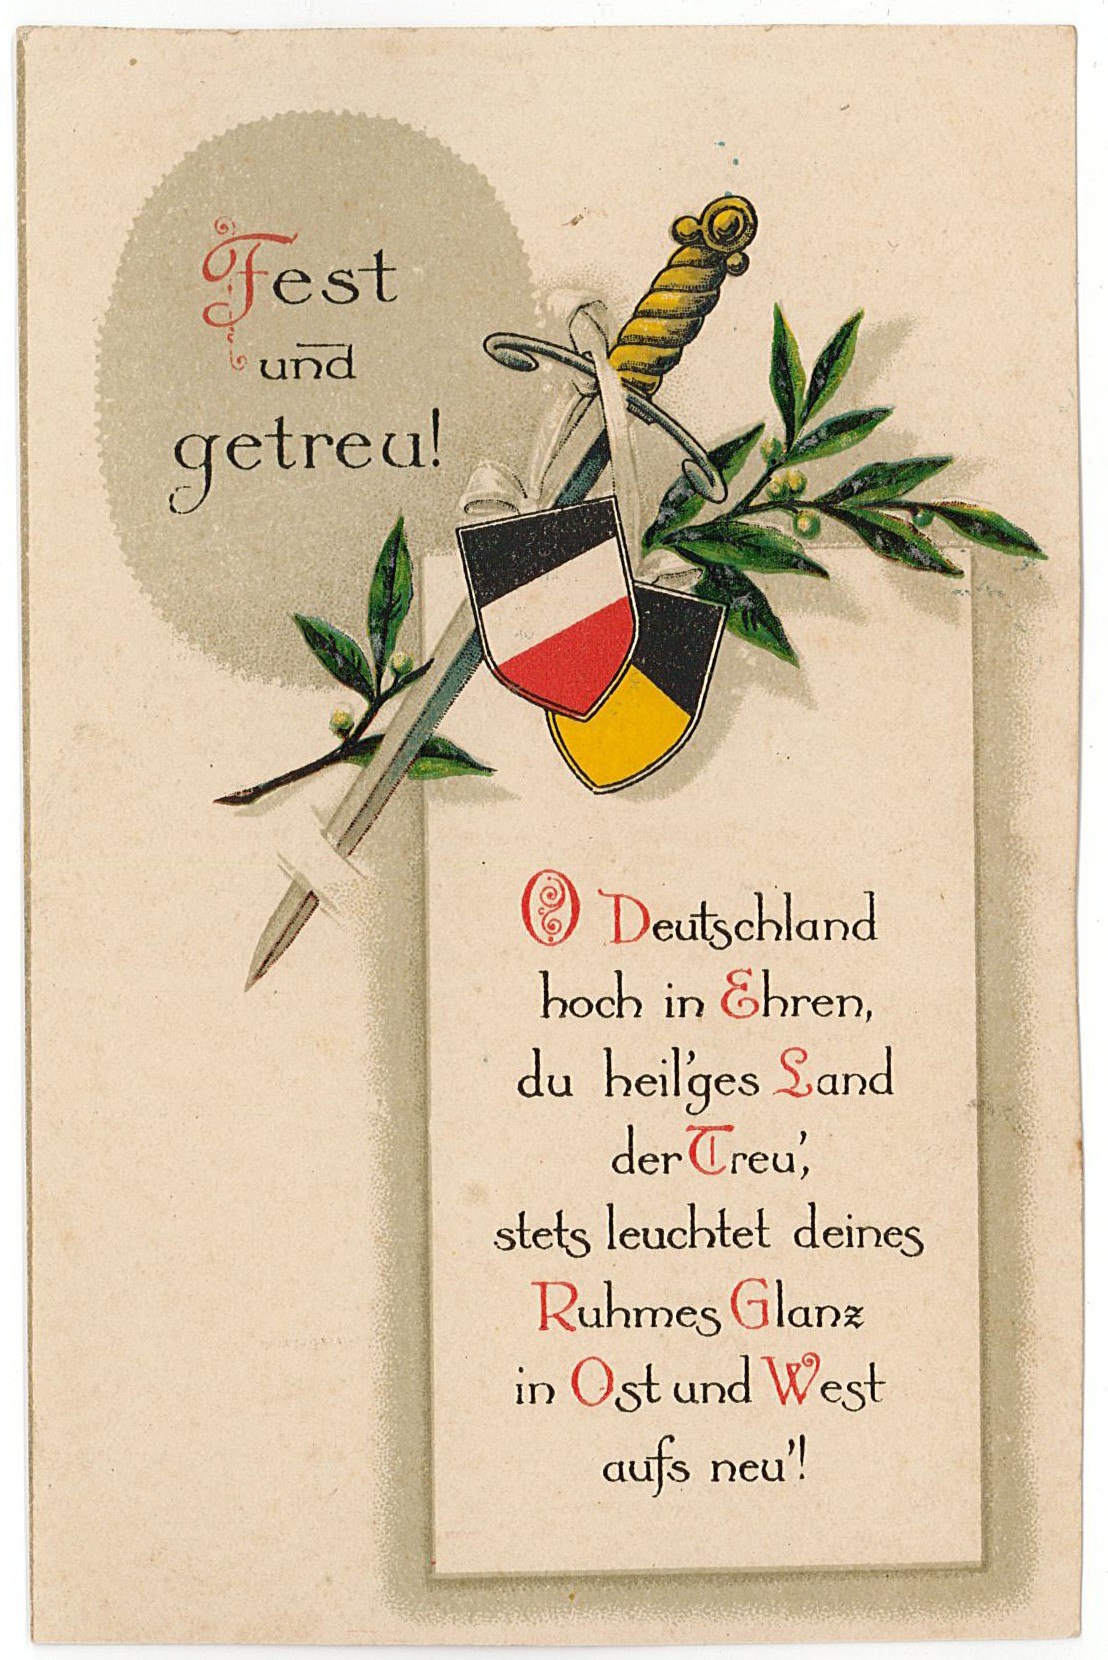 Postkarte von Hermann Böttcher an seinen Schwiegervater Bäckermeister Hermann Otto, 30.12.1916 (Museum Wolmirstedt RR-F)